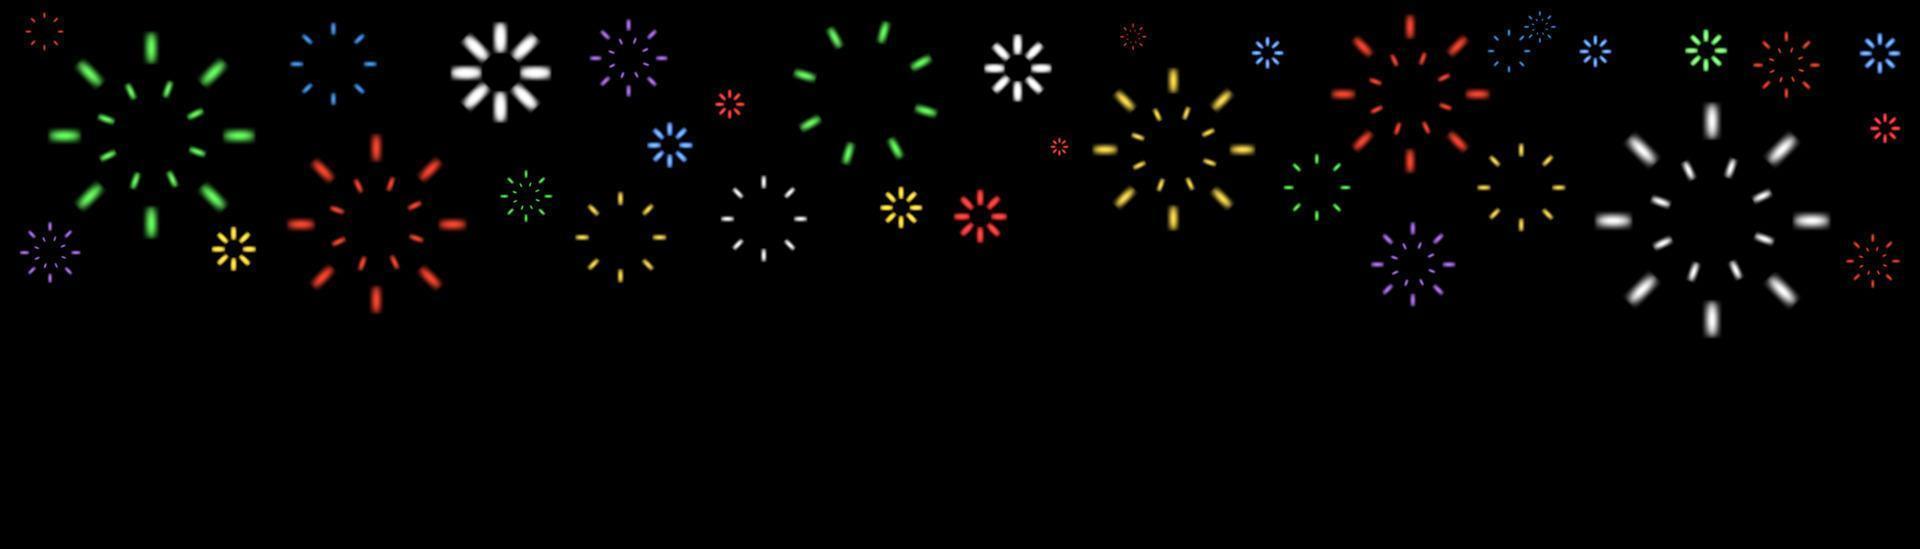 helder kleurrijk vuurwerk Bij schemering. sprankelend vuurwerk feestelijk, vakantie carnaval voetzoeker explosie knal en abstract barsten in nacht lucht voor felicitatie kaart ontwerp. vector